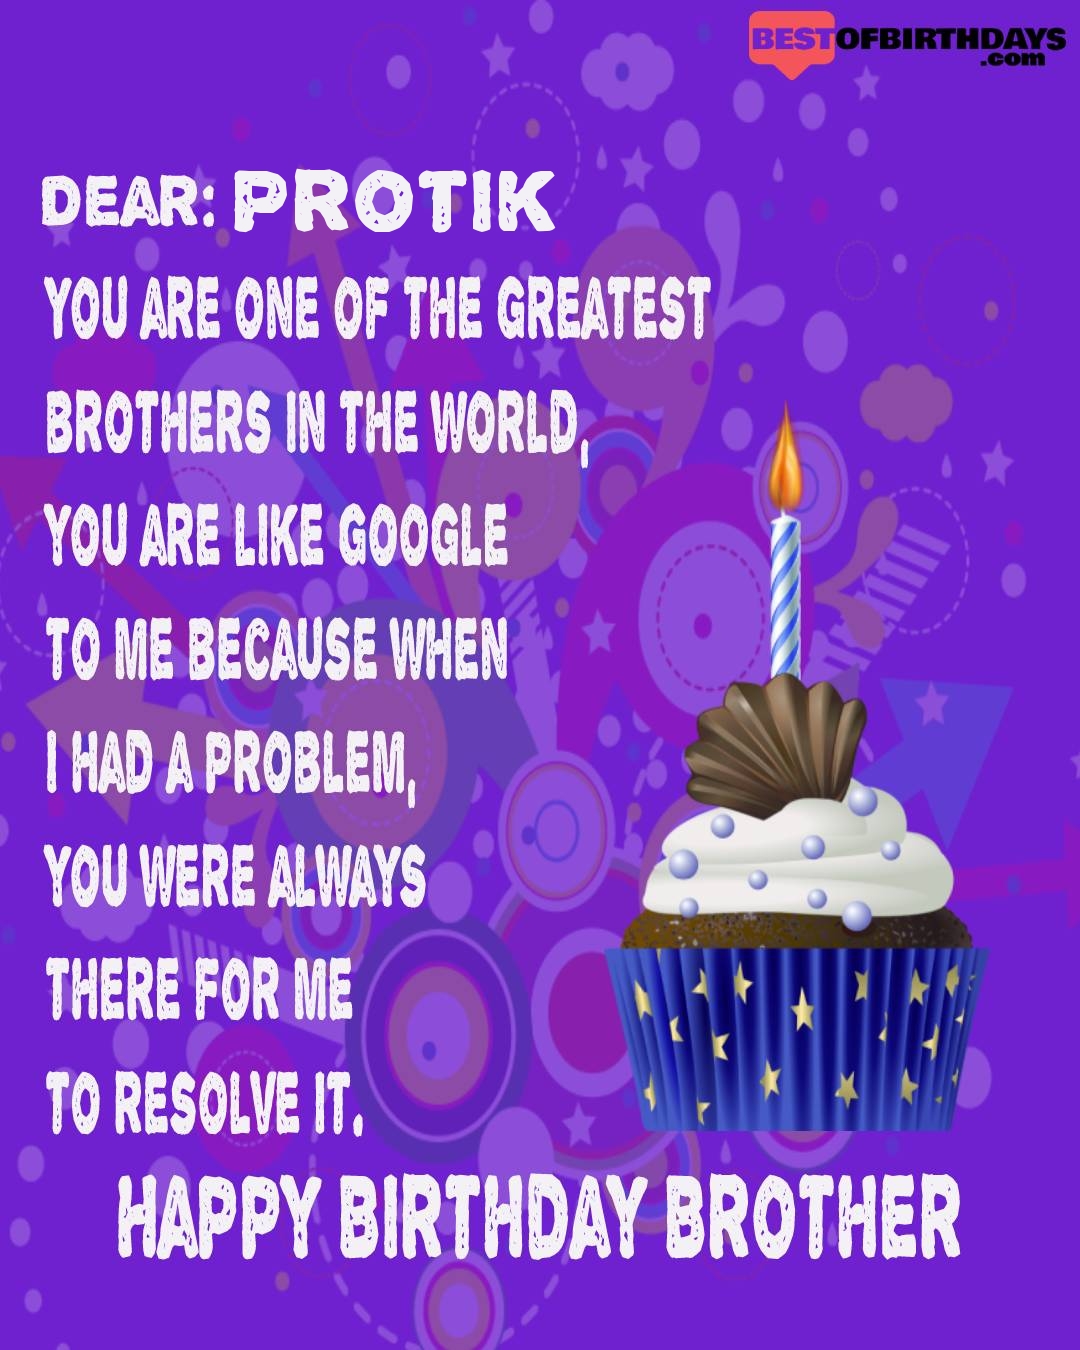 Happy birthday protik bhai brother bro